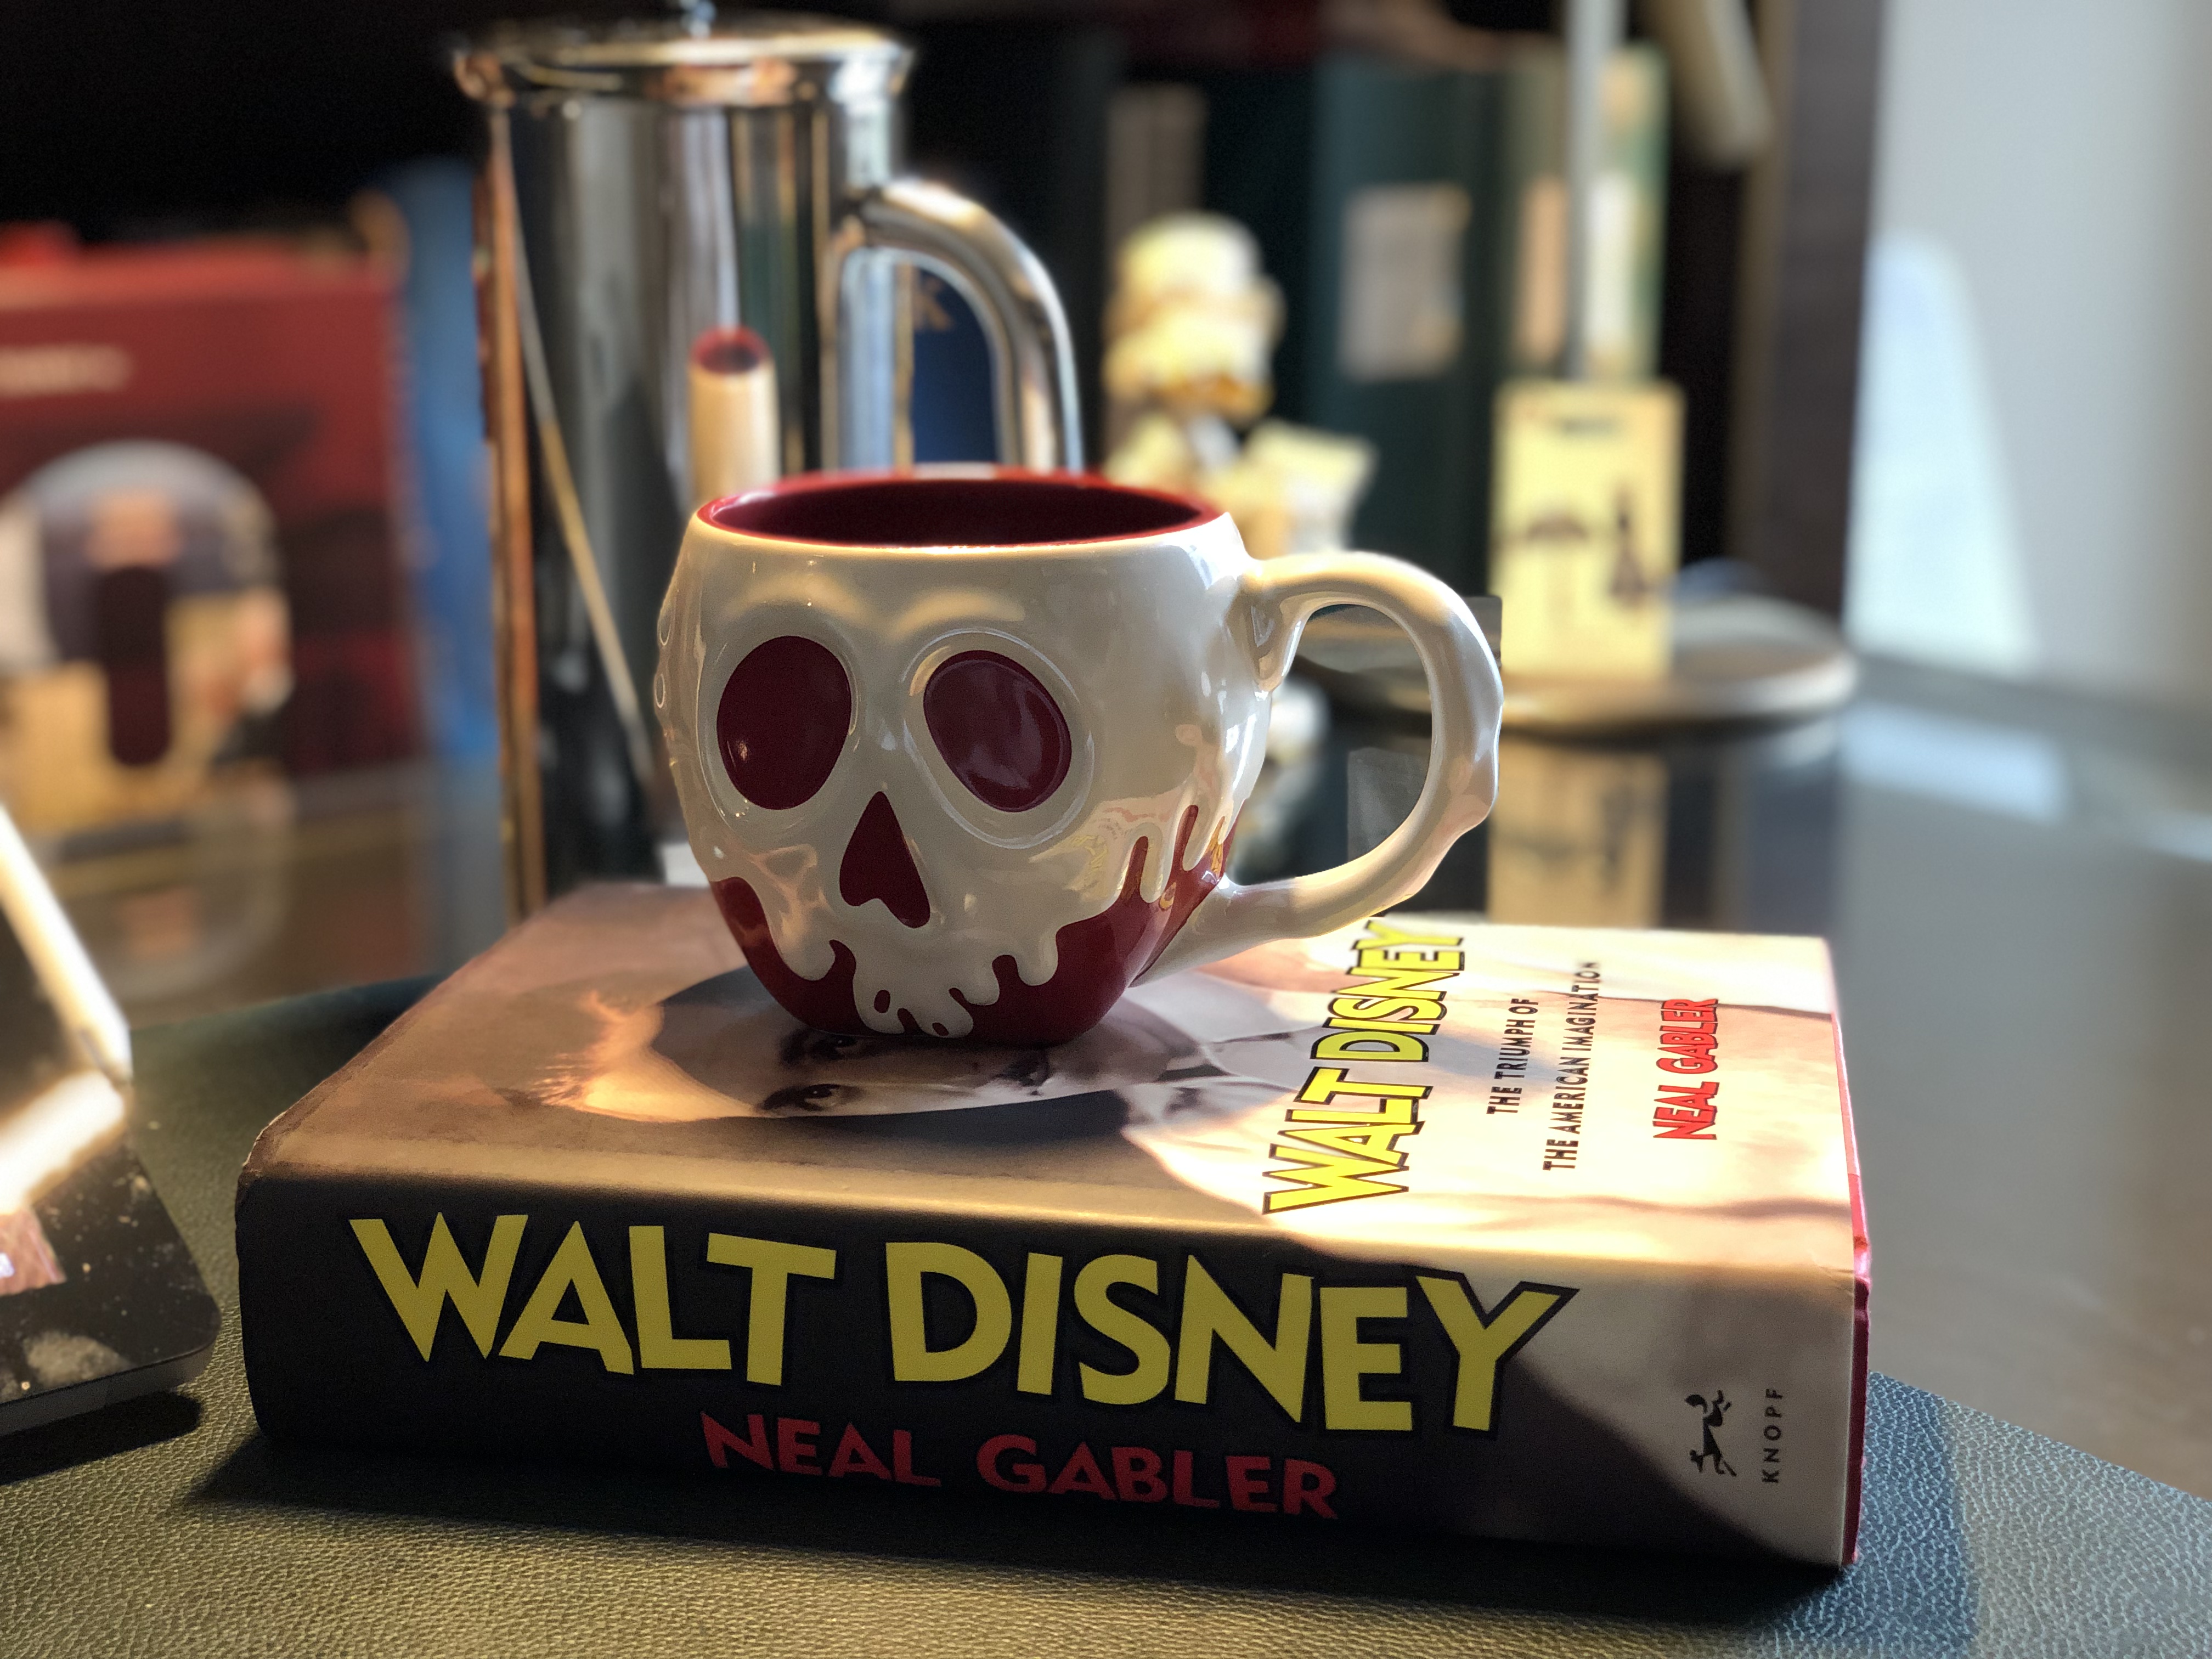 Disney Biography and Snow White Poisoned Apple Mug on Joshua Kennon's Desk